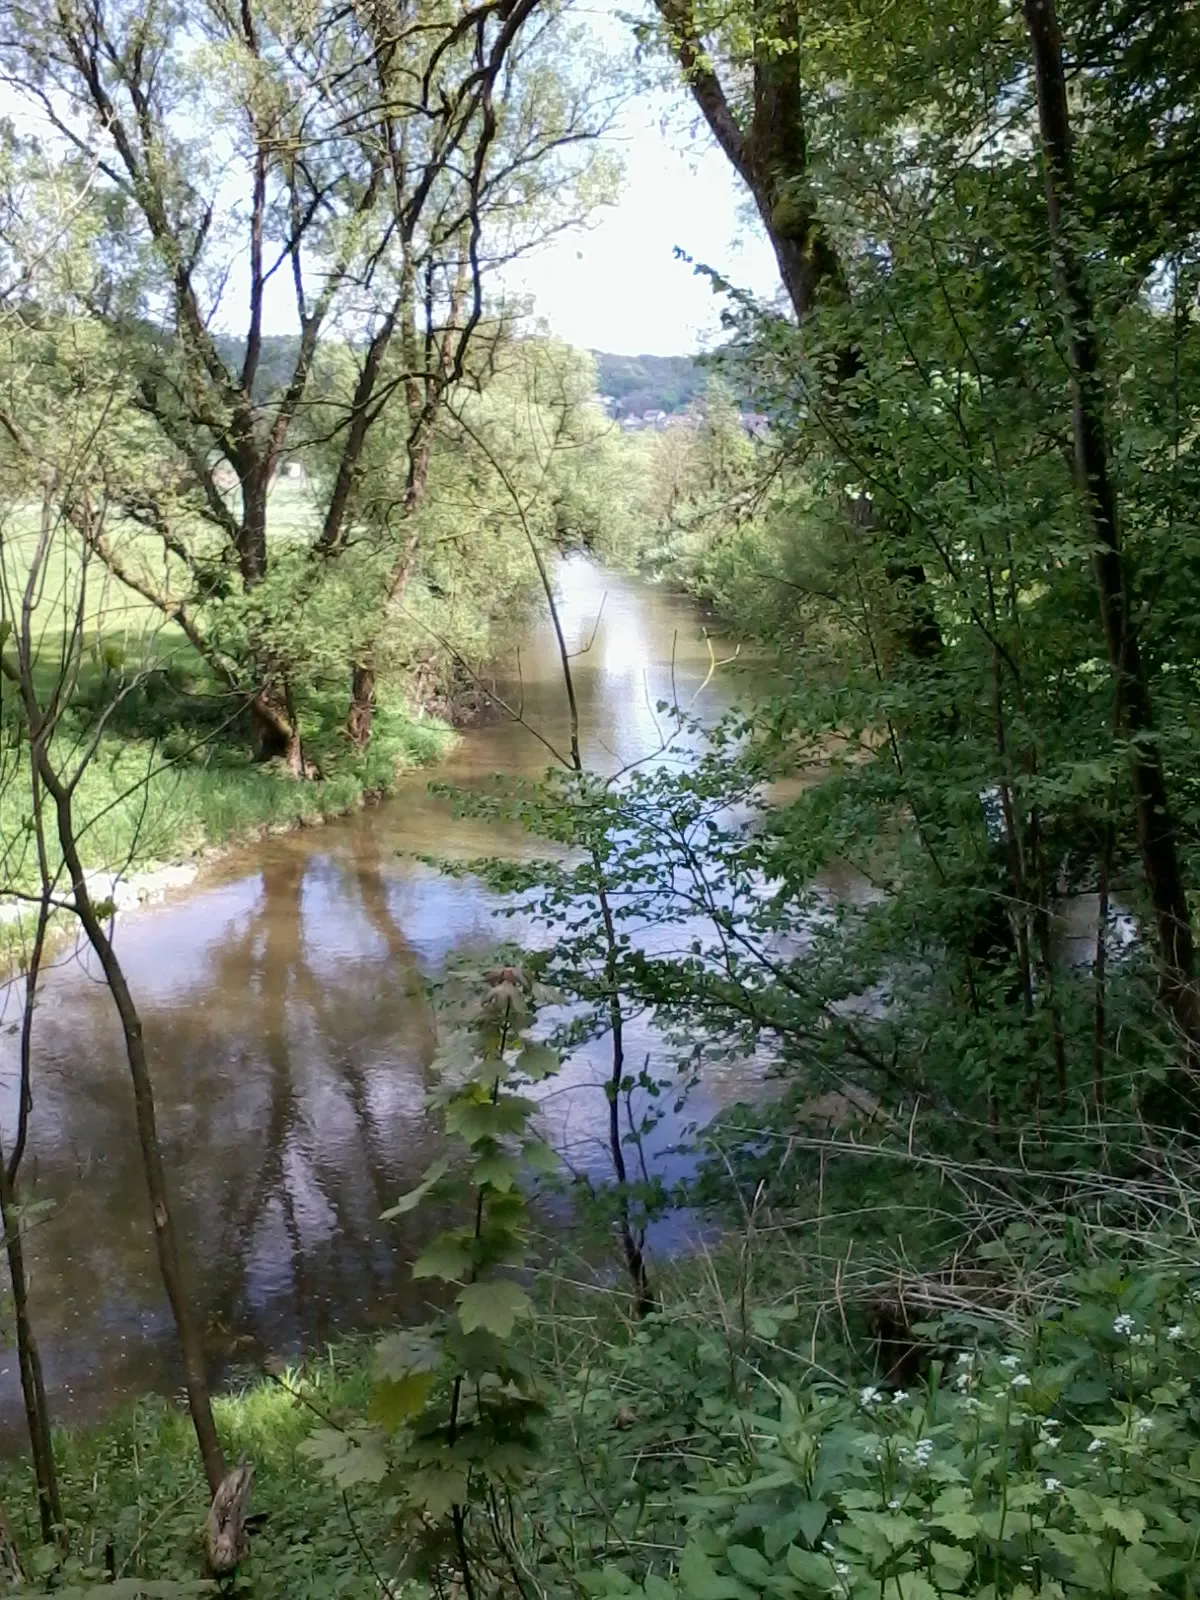 Photo showing: The river "Kocher" near the village Gelbingen, district Schwaebisch Hall, Baden-Württemberg.